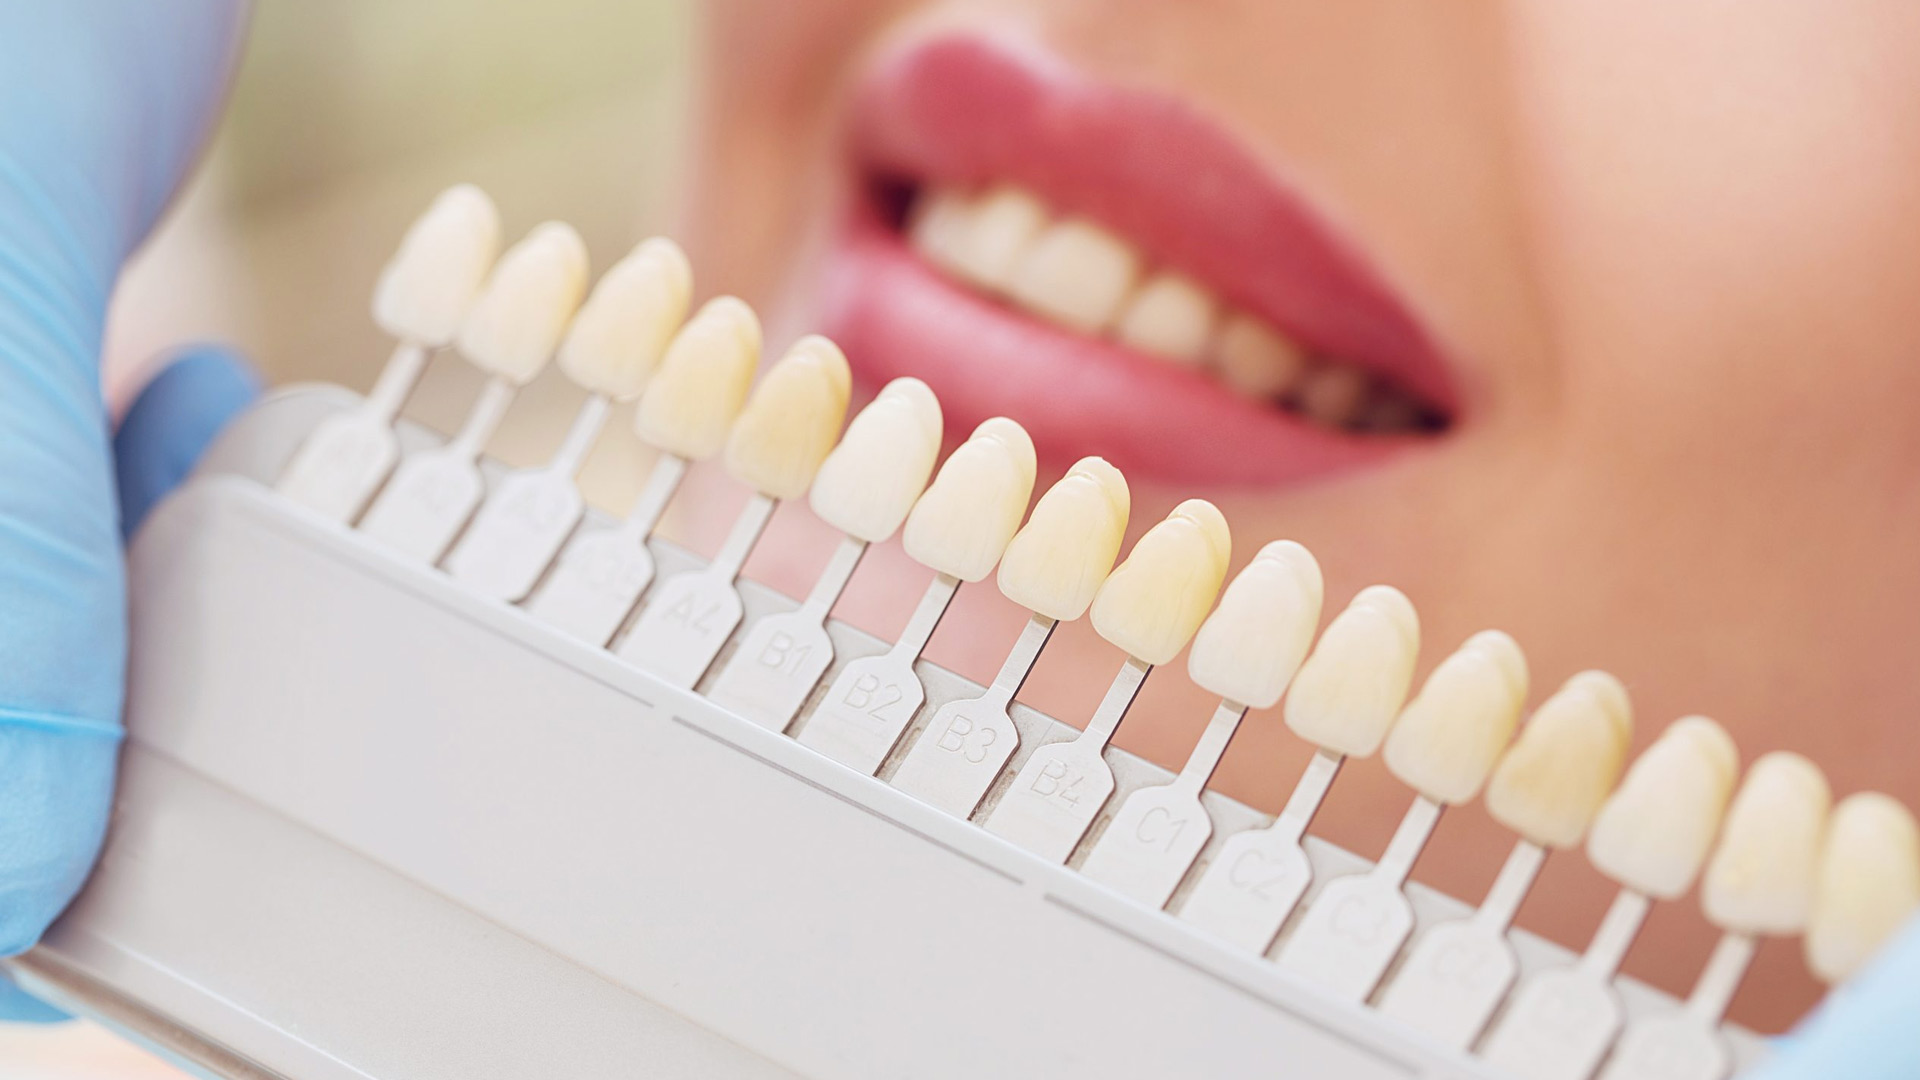 Faccette dentali: le 10 domande più frequenti tra dubbi e falsi miti